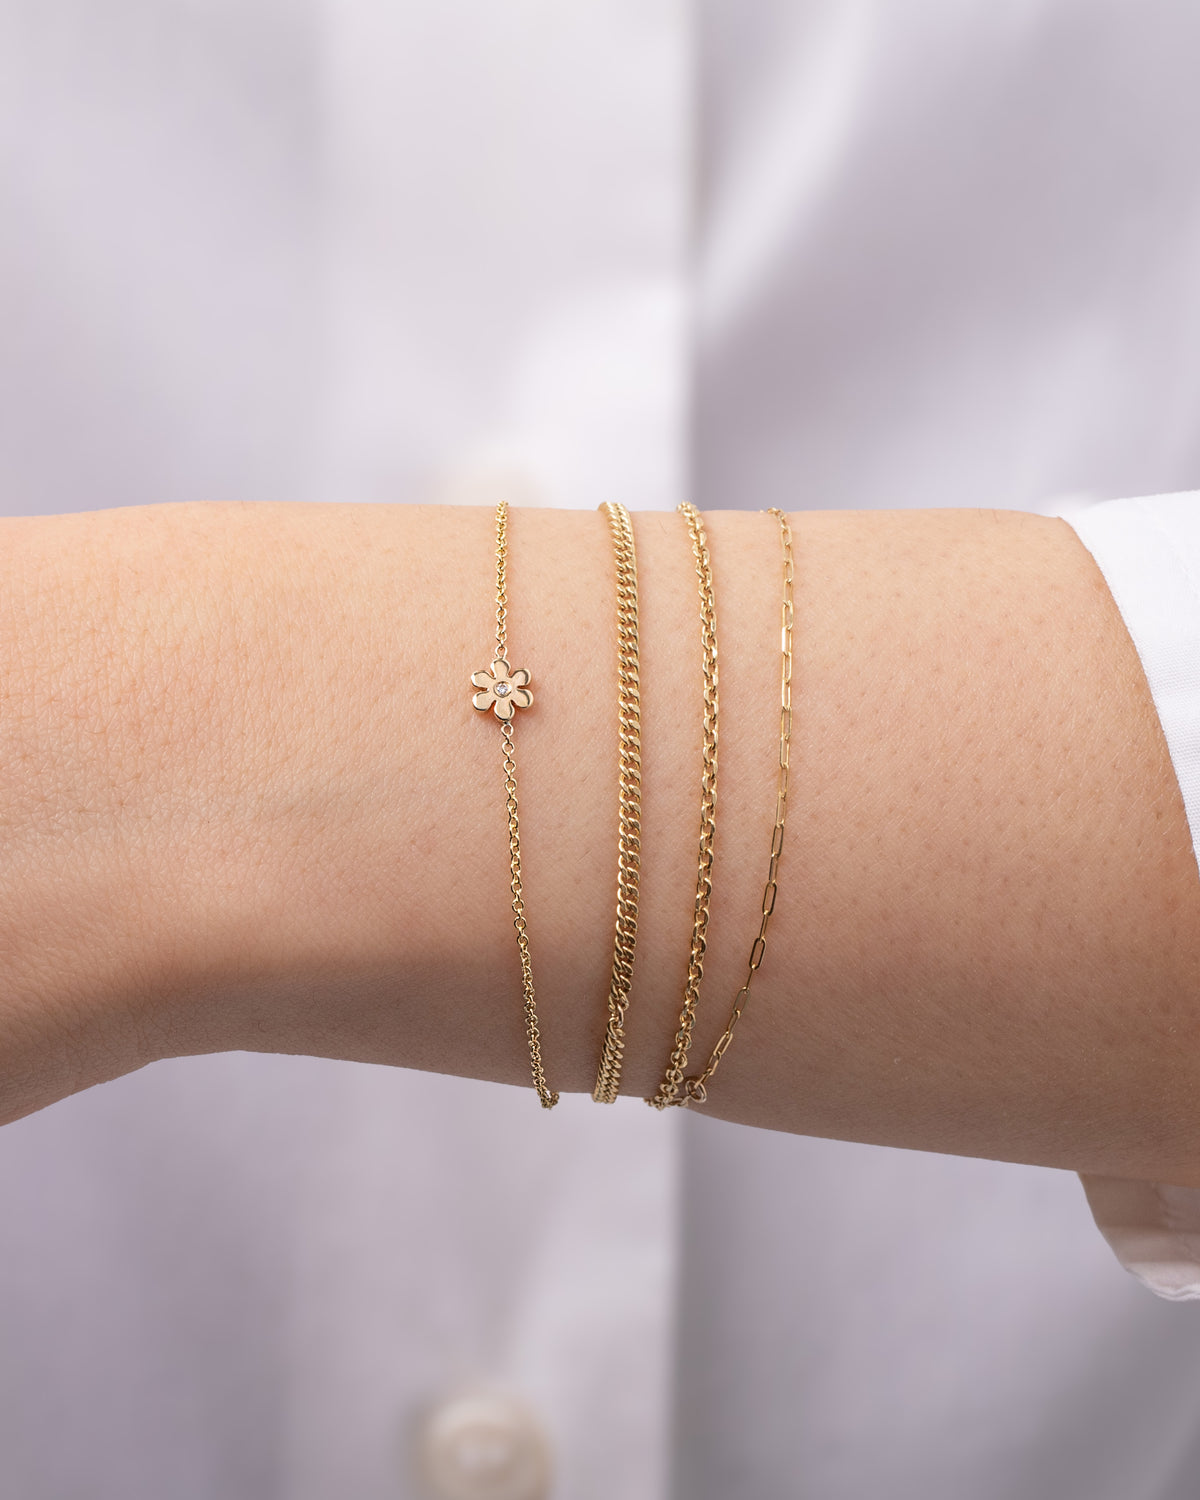 14k Gold Tiny Flower Bracelet with Diamond